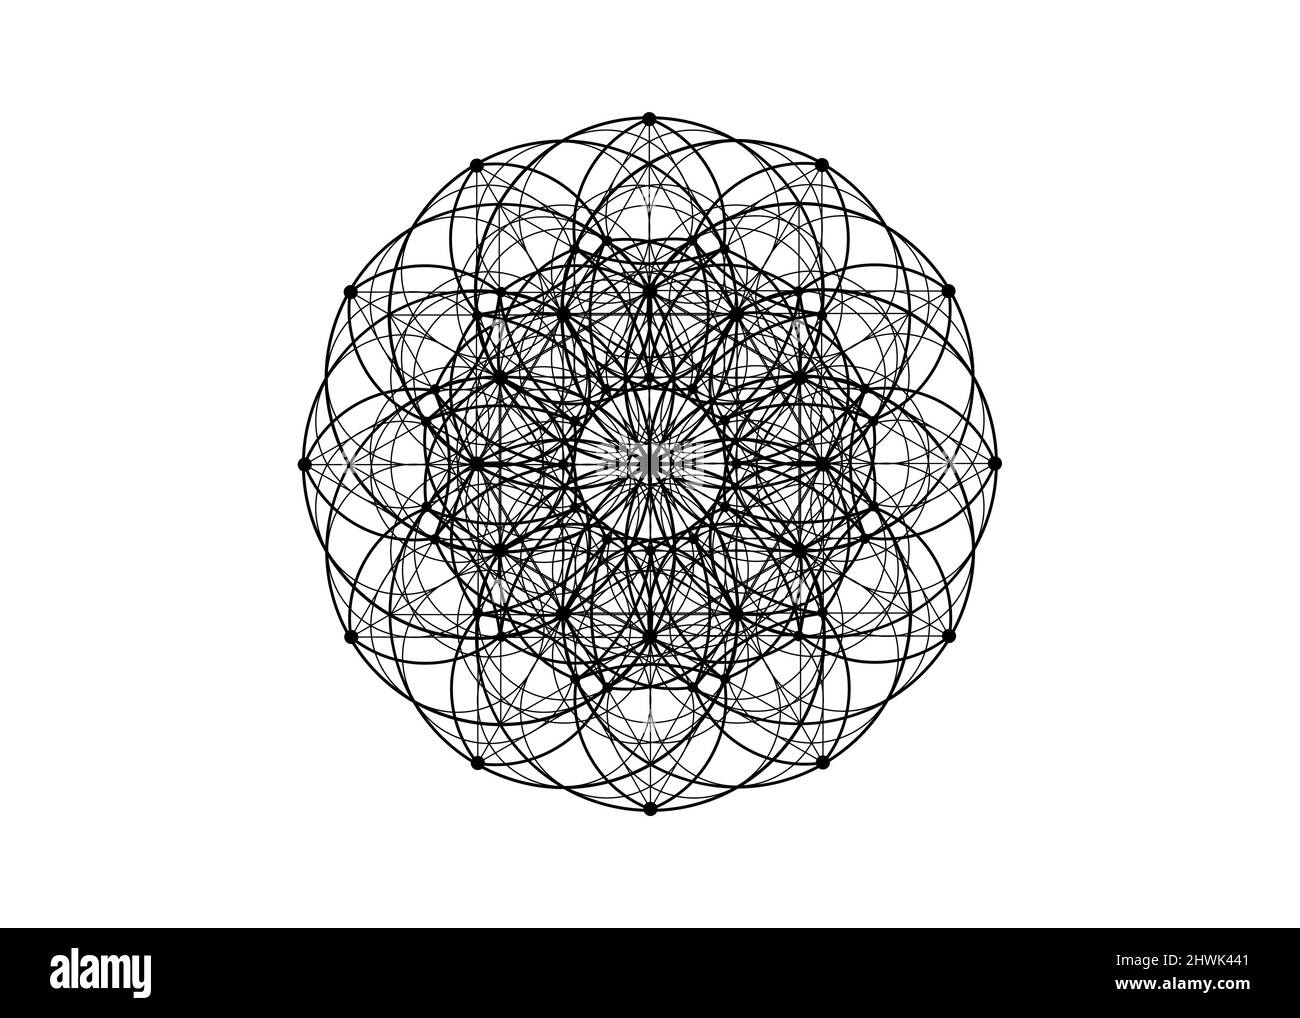 yantra fleur mandala géométrie sacrée, symbole de l'harmonie et de l'équilibre. Couleur noire talisman mystique, vecteur de lignes isolé sur fond blanc Illustration de Vecteur